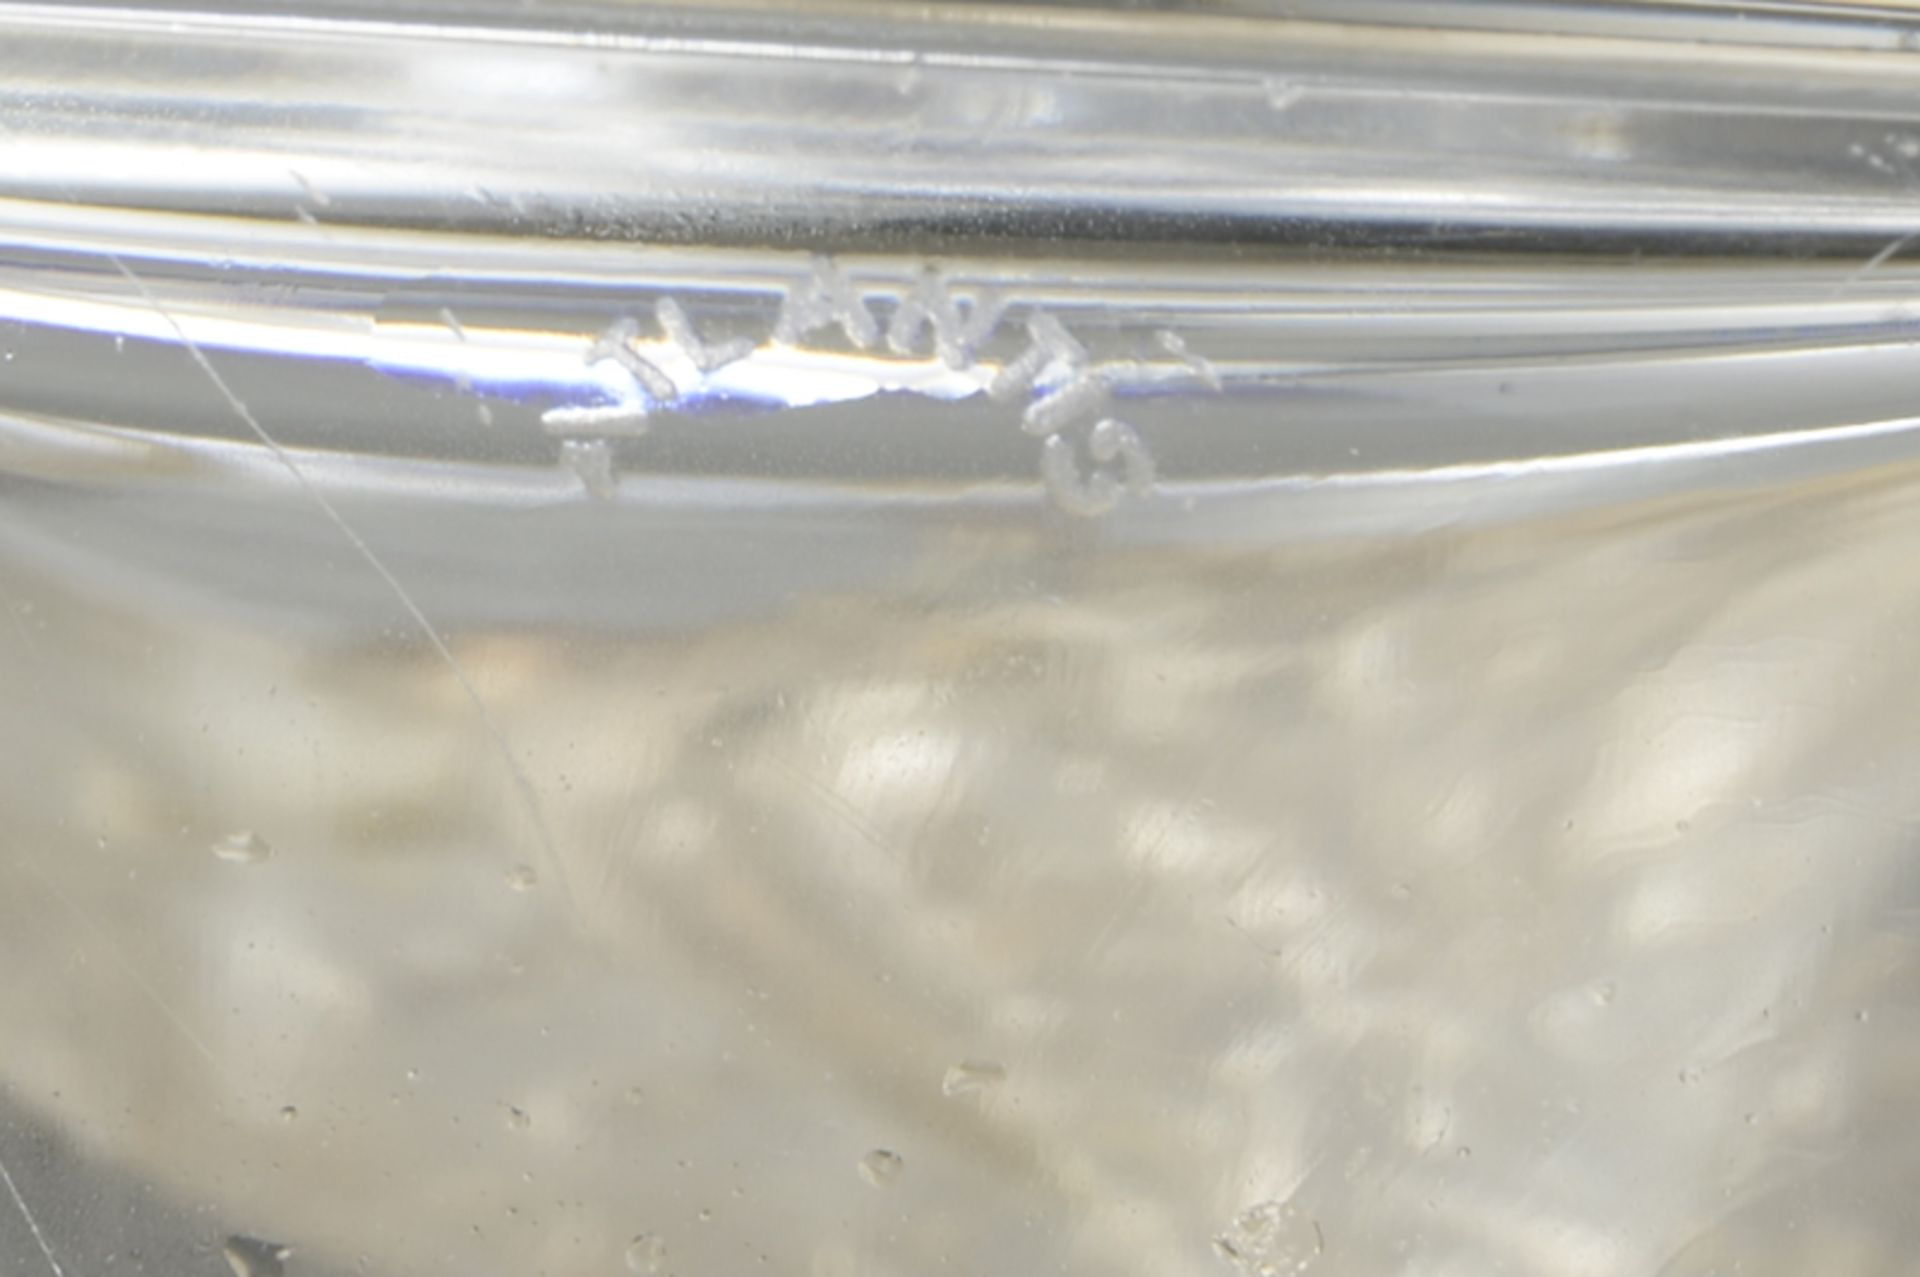 Karaffe aus Kristall mit aufgelegter Silbermontierungeckiger Korpus, blauer geschliffener Stöpsel, - Image 2 of 2